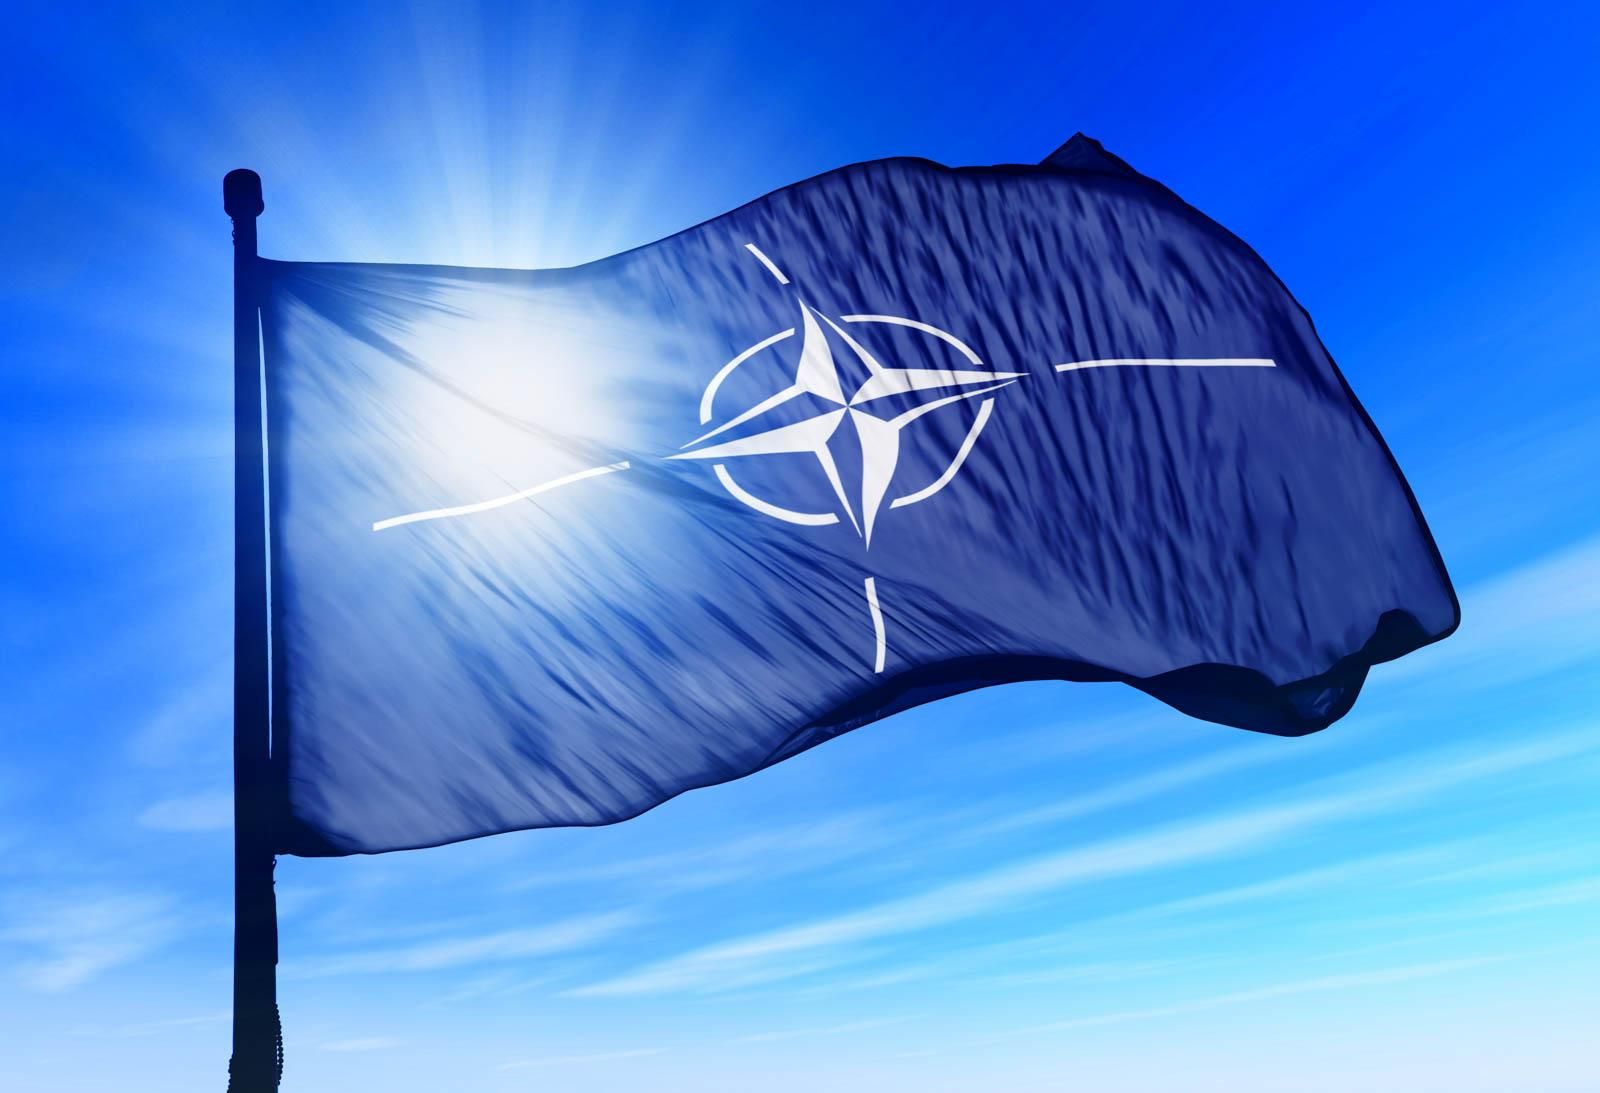 "Деэскалация возможна уже завтра": СМИ пишут, что в НАТО уверены в ненападении России на Украину